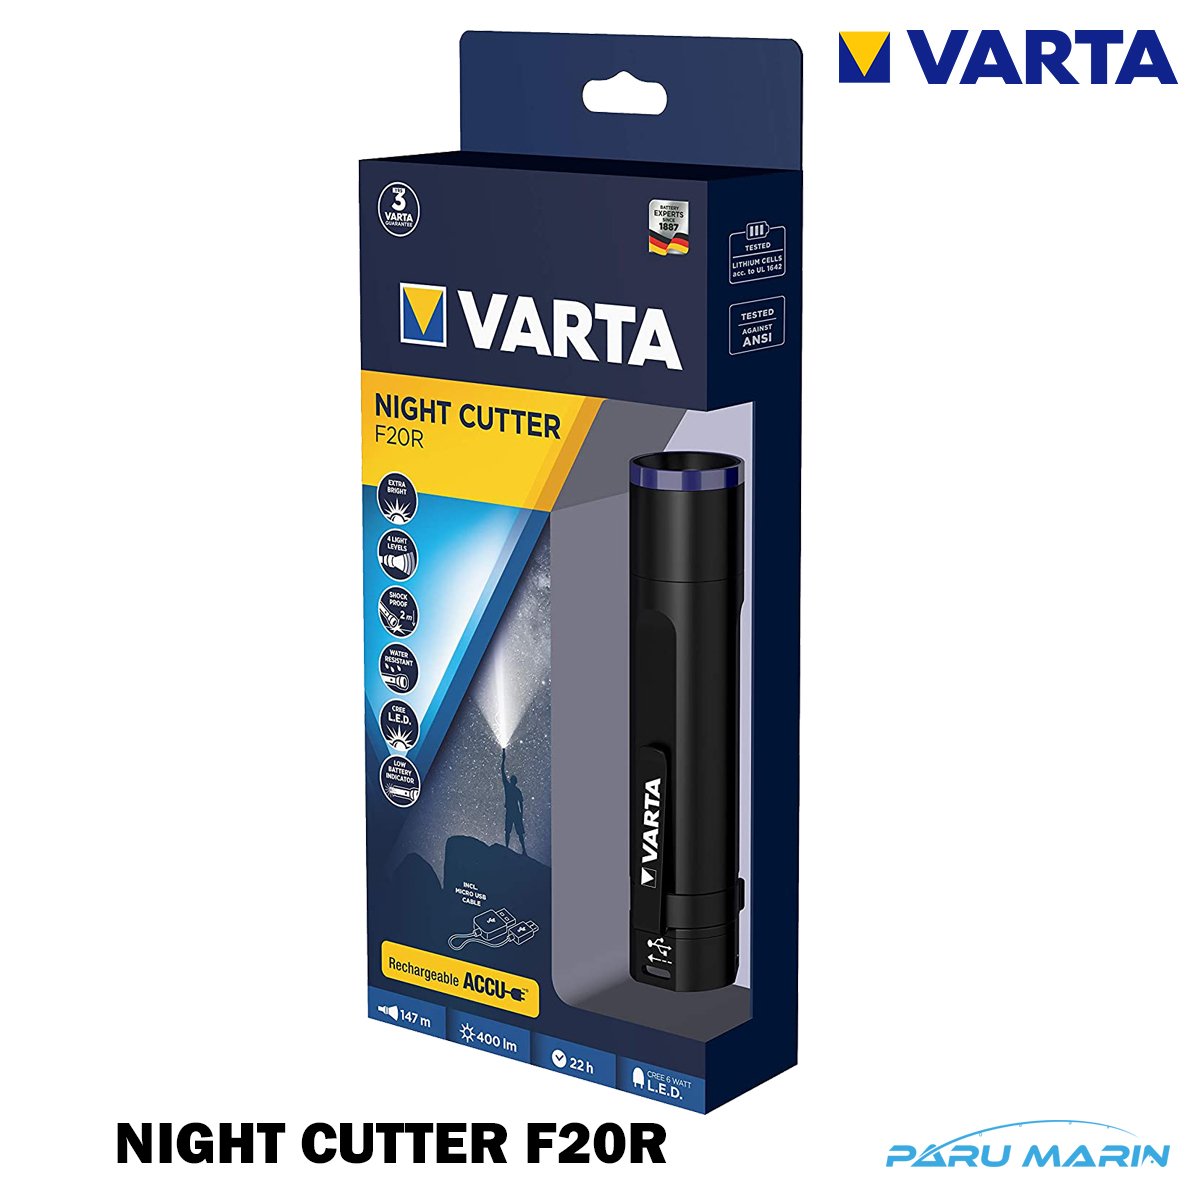 VARTA NIGHT CUTTER F20R Şarjlı Led El Feneri